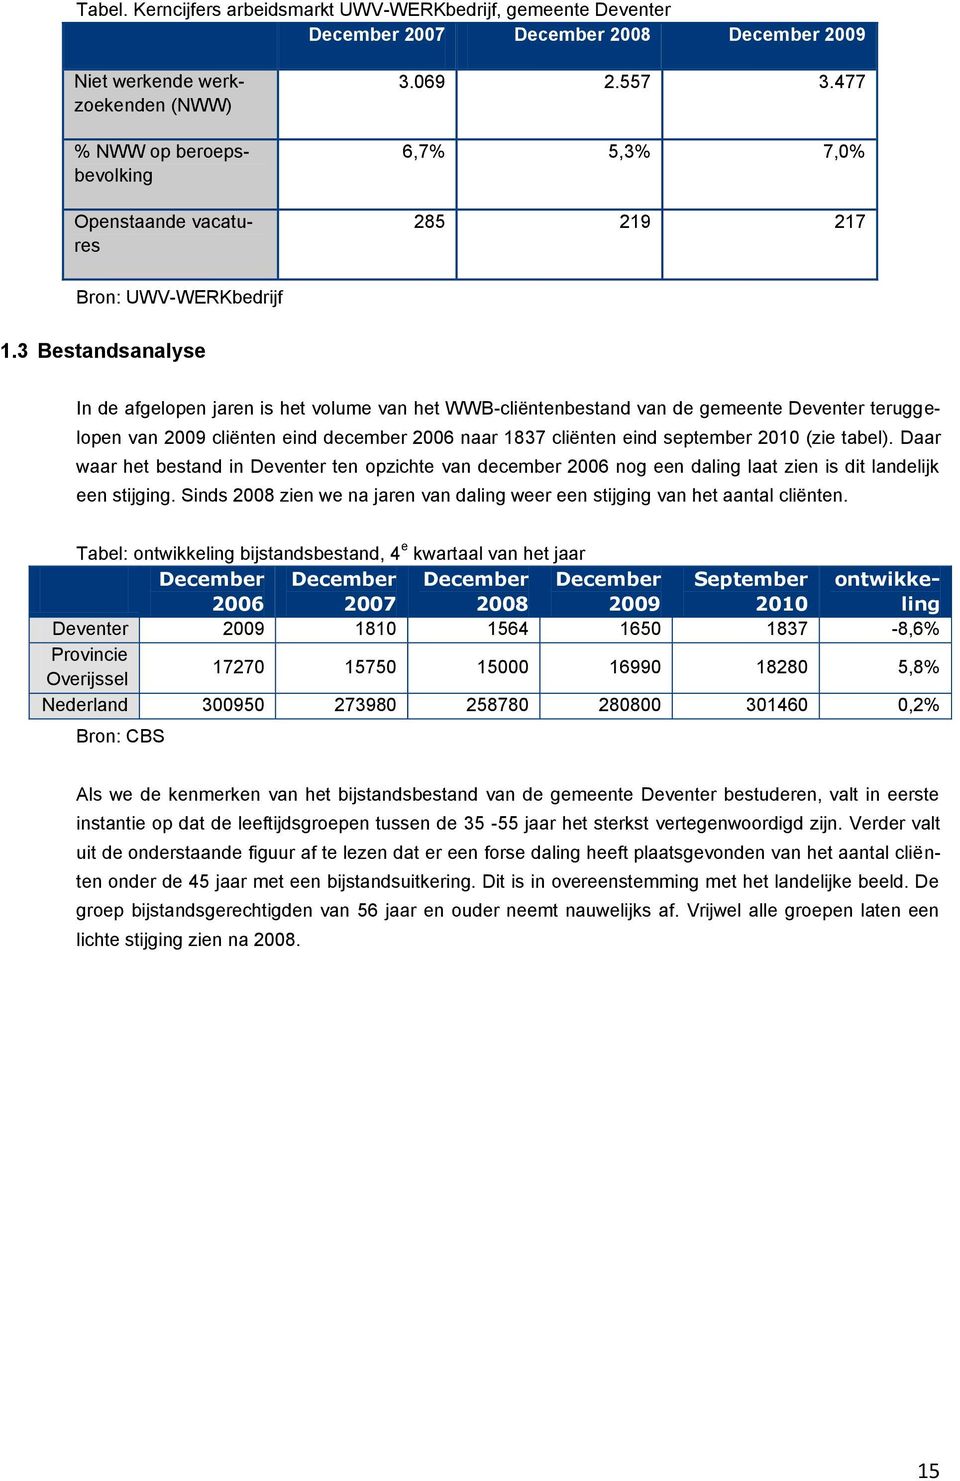 3 Bestandsanalyse In de afgelopen jaren is het volume van het WWB-cliëntenbestand van de gemeente Deventer teruggelopen van 2009 cliënten eind december 2006 naar 1837 cliënten eind september 2010